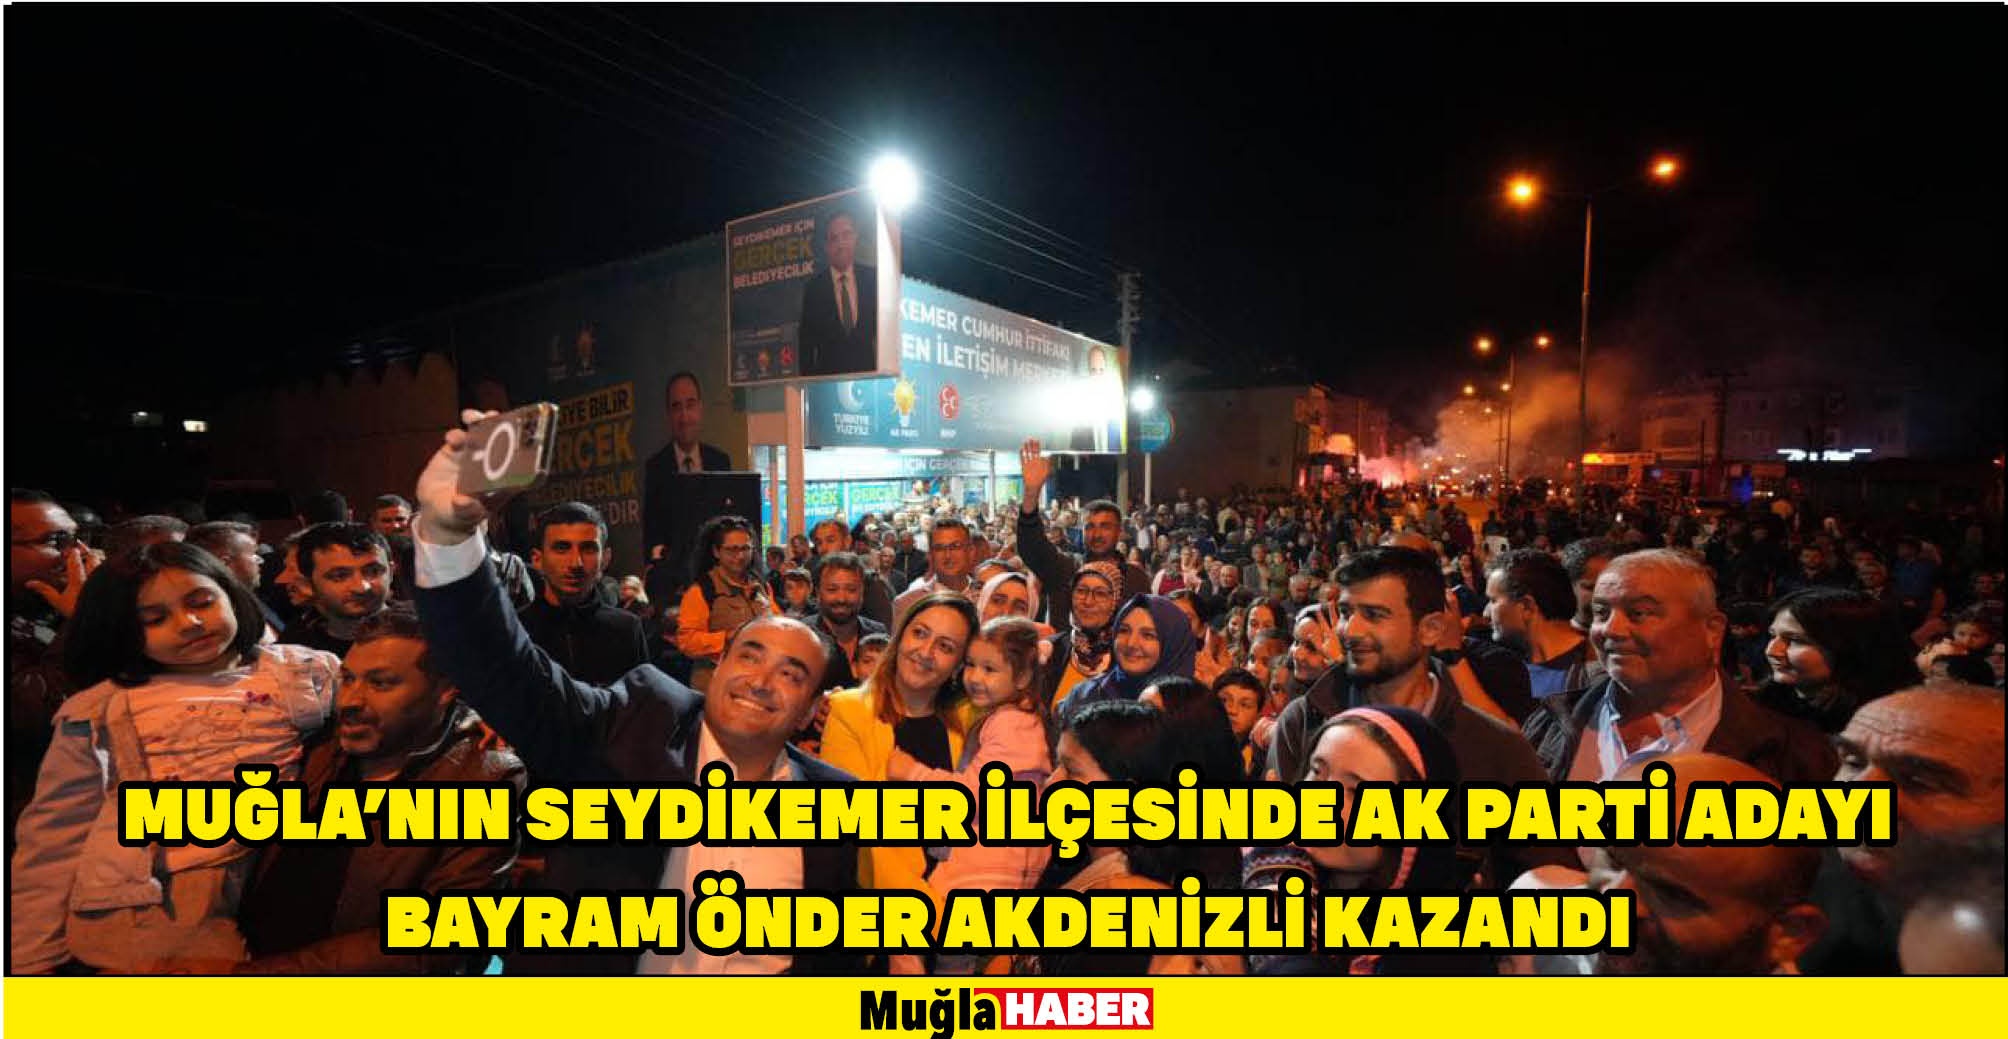 Muğla'nın Seydikemer ilçesinde kesin olmayan sonuçlara göre, AK Parti adayı Bayram Önder Akdenizli kazandı